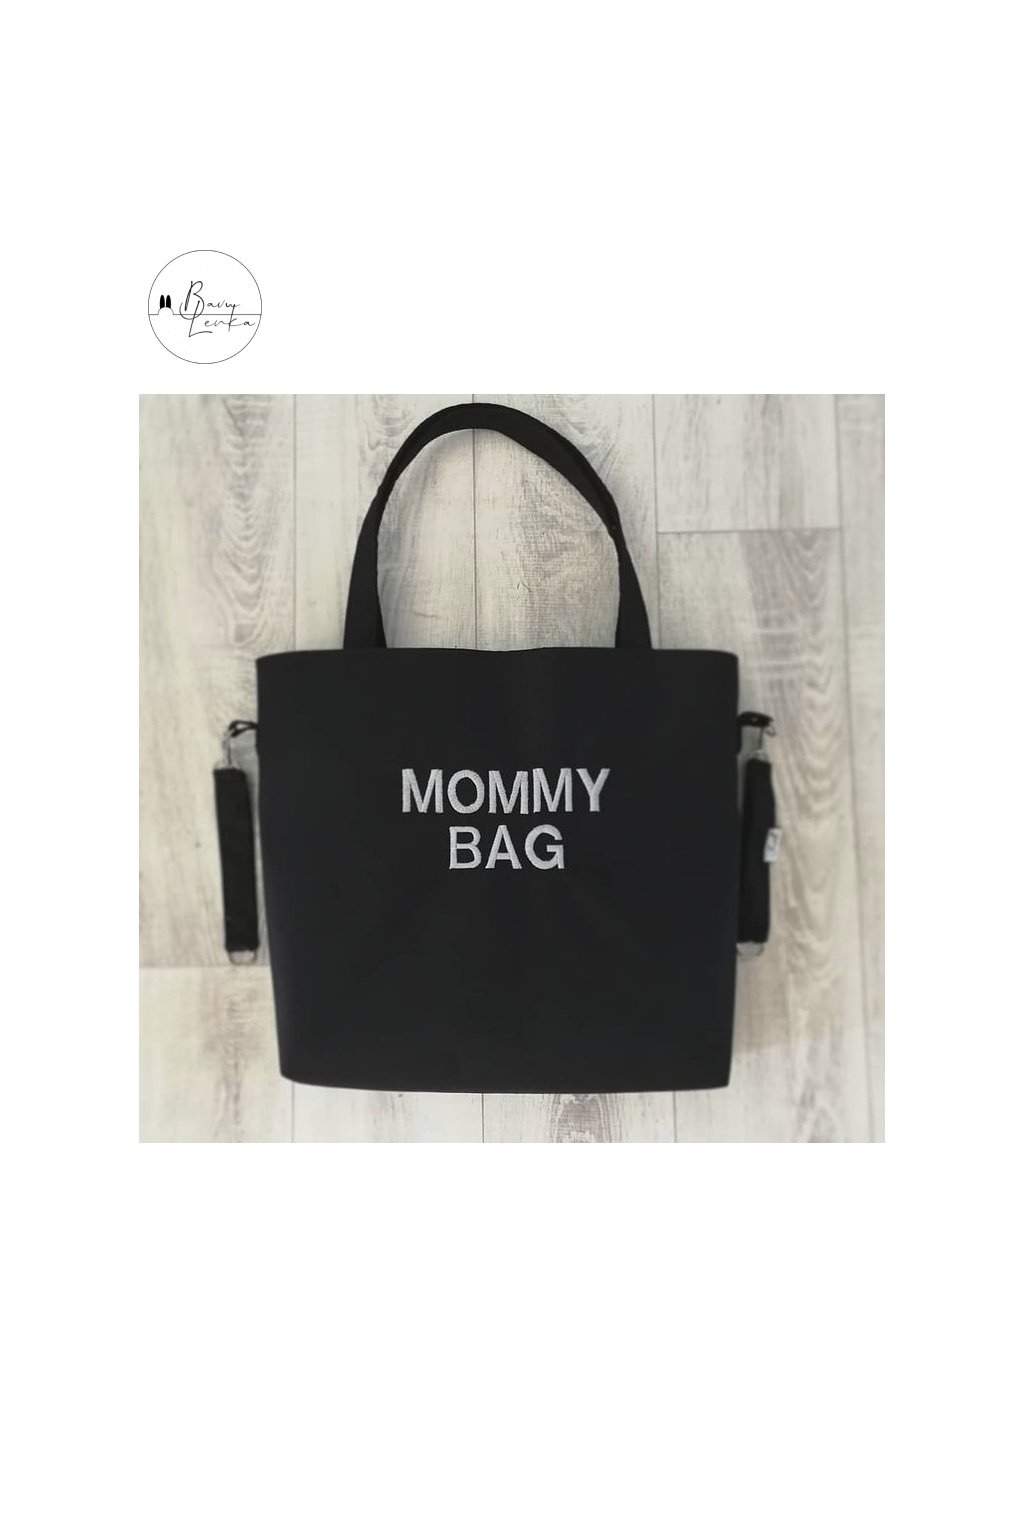 Taška na kočárek - mommy bag - černá